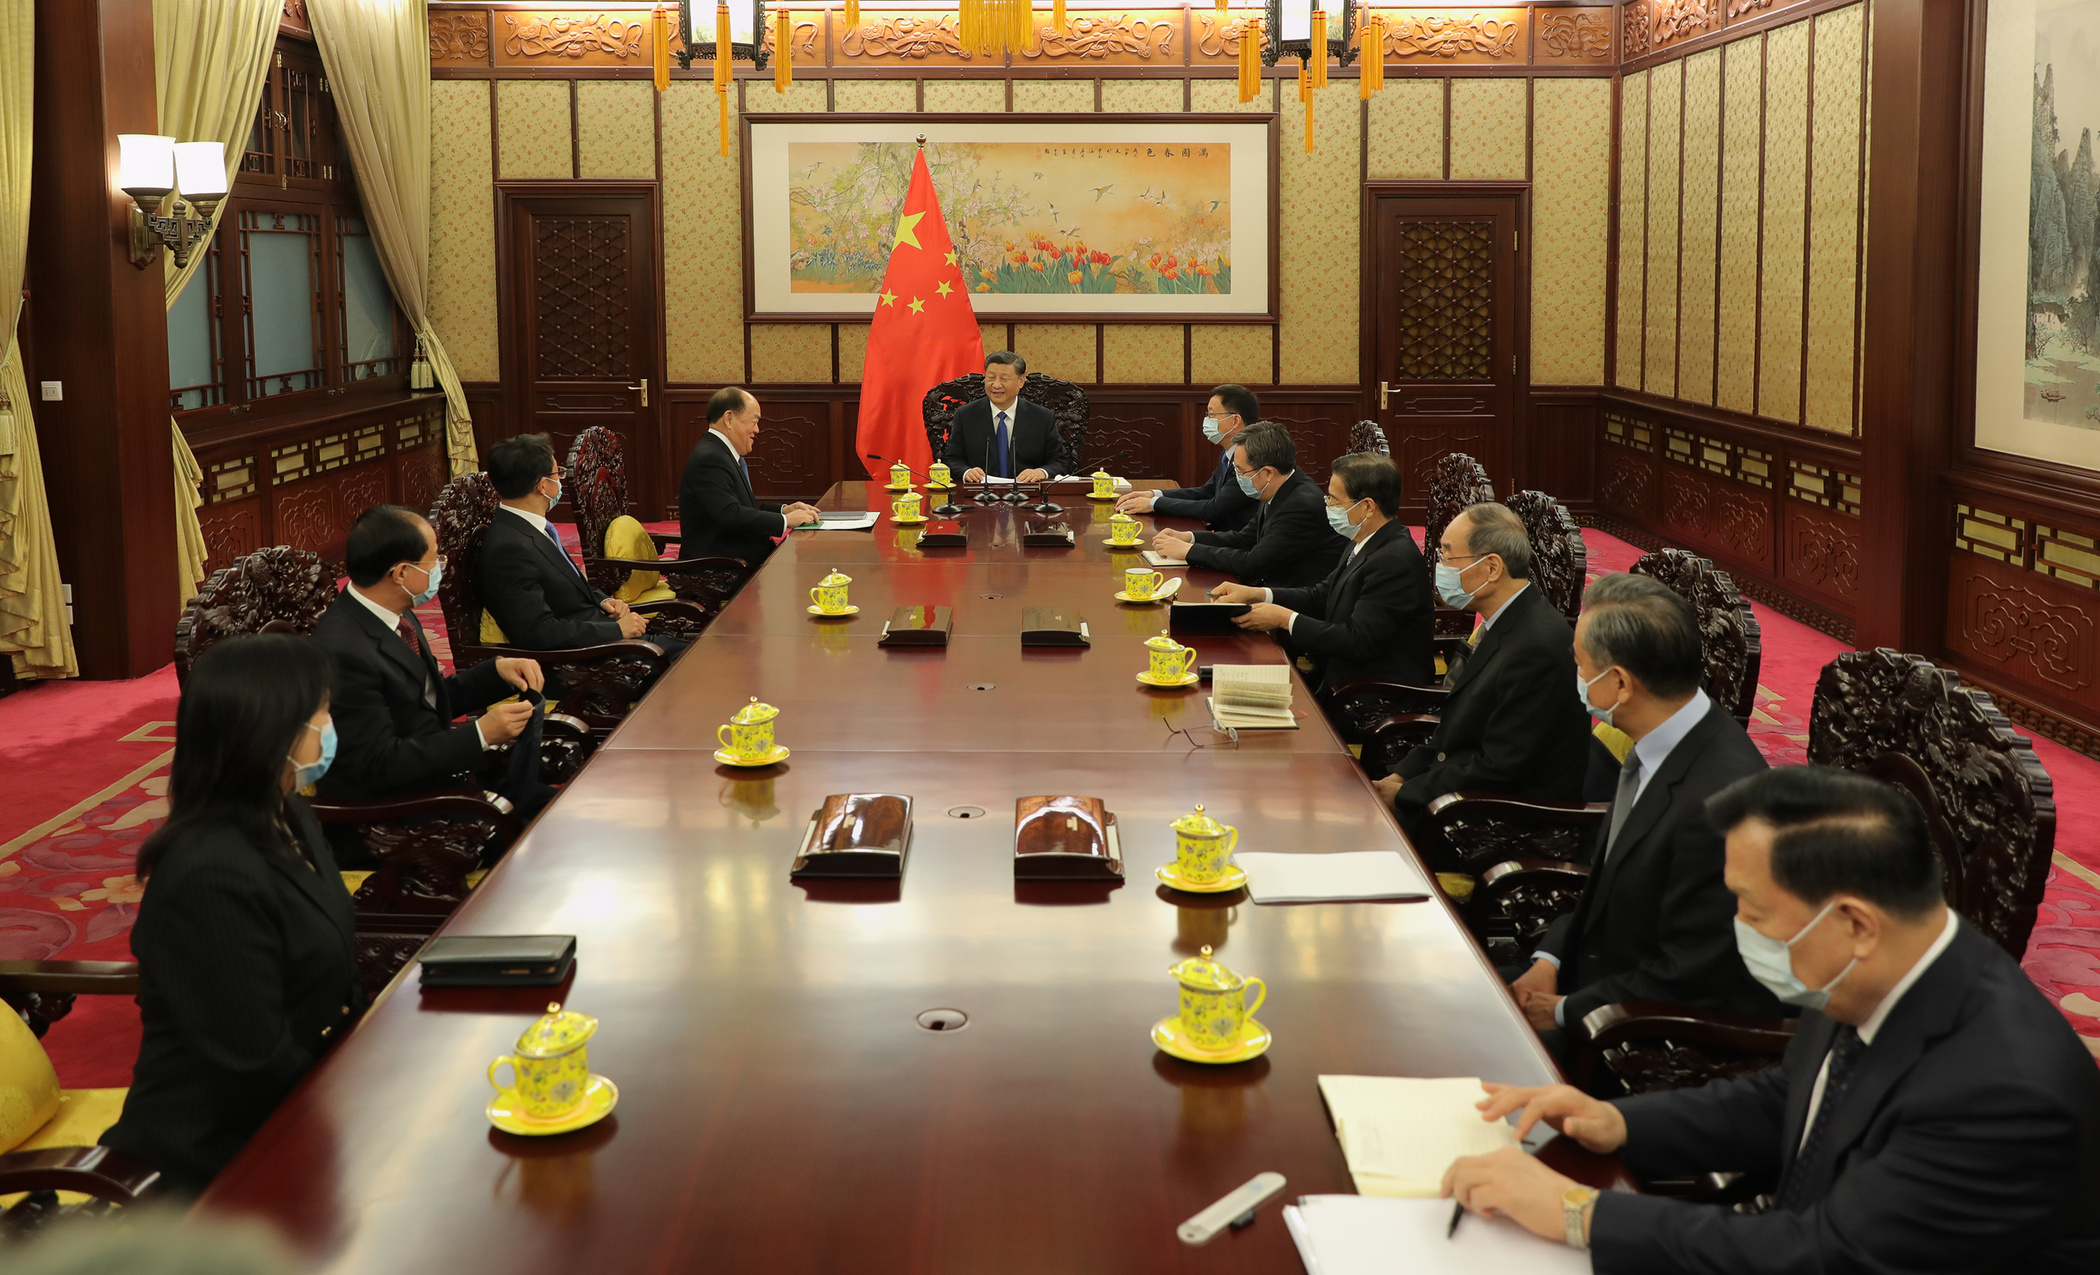 President Xi Jinping and Chief Executive Ho Iat Seng